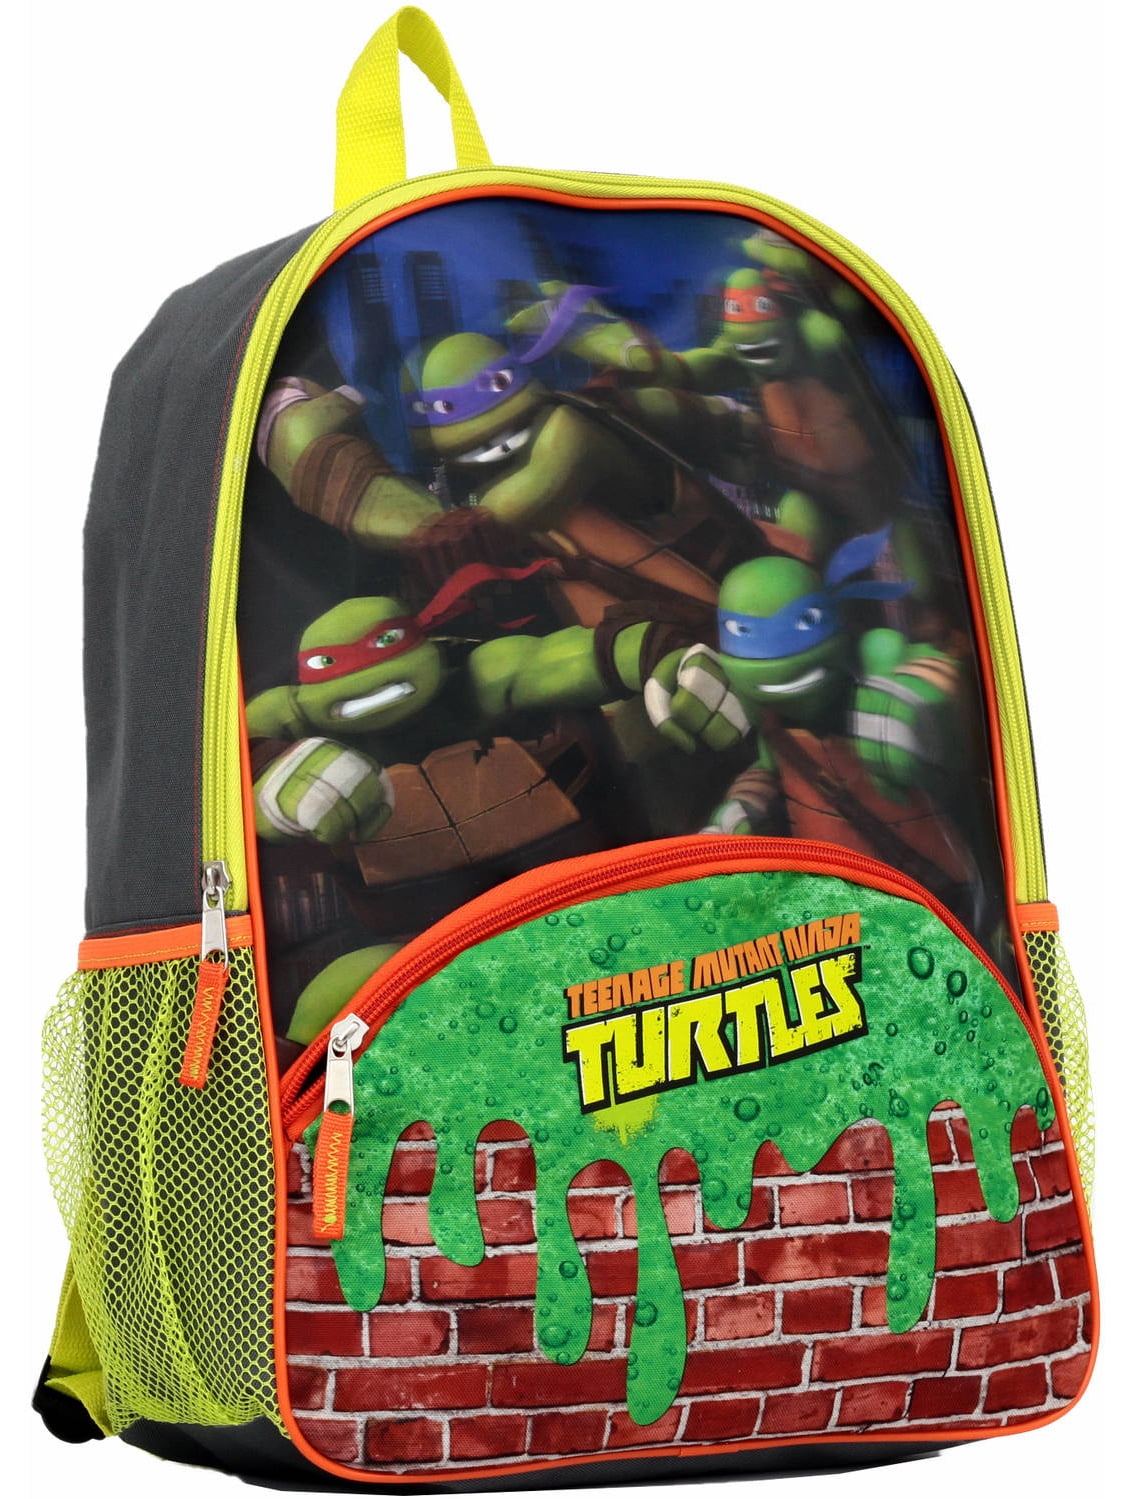 Teenage Mutant Ninja Turtles TMNT bookbag backpack Crocs school camp honeycomb 